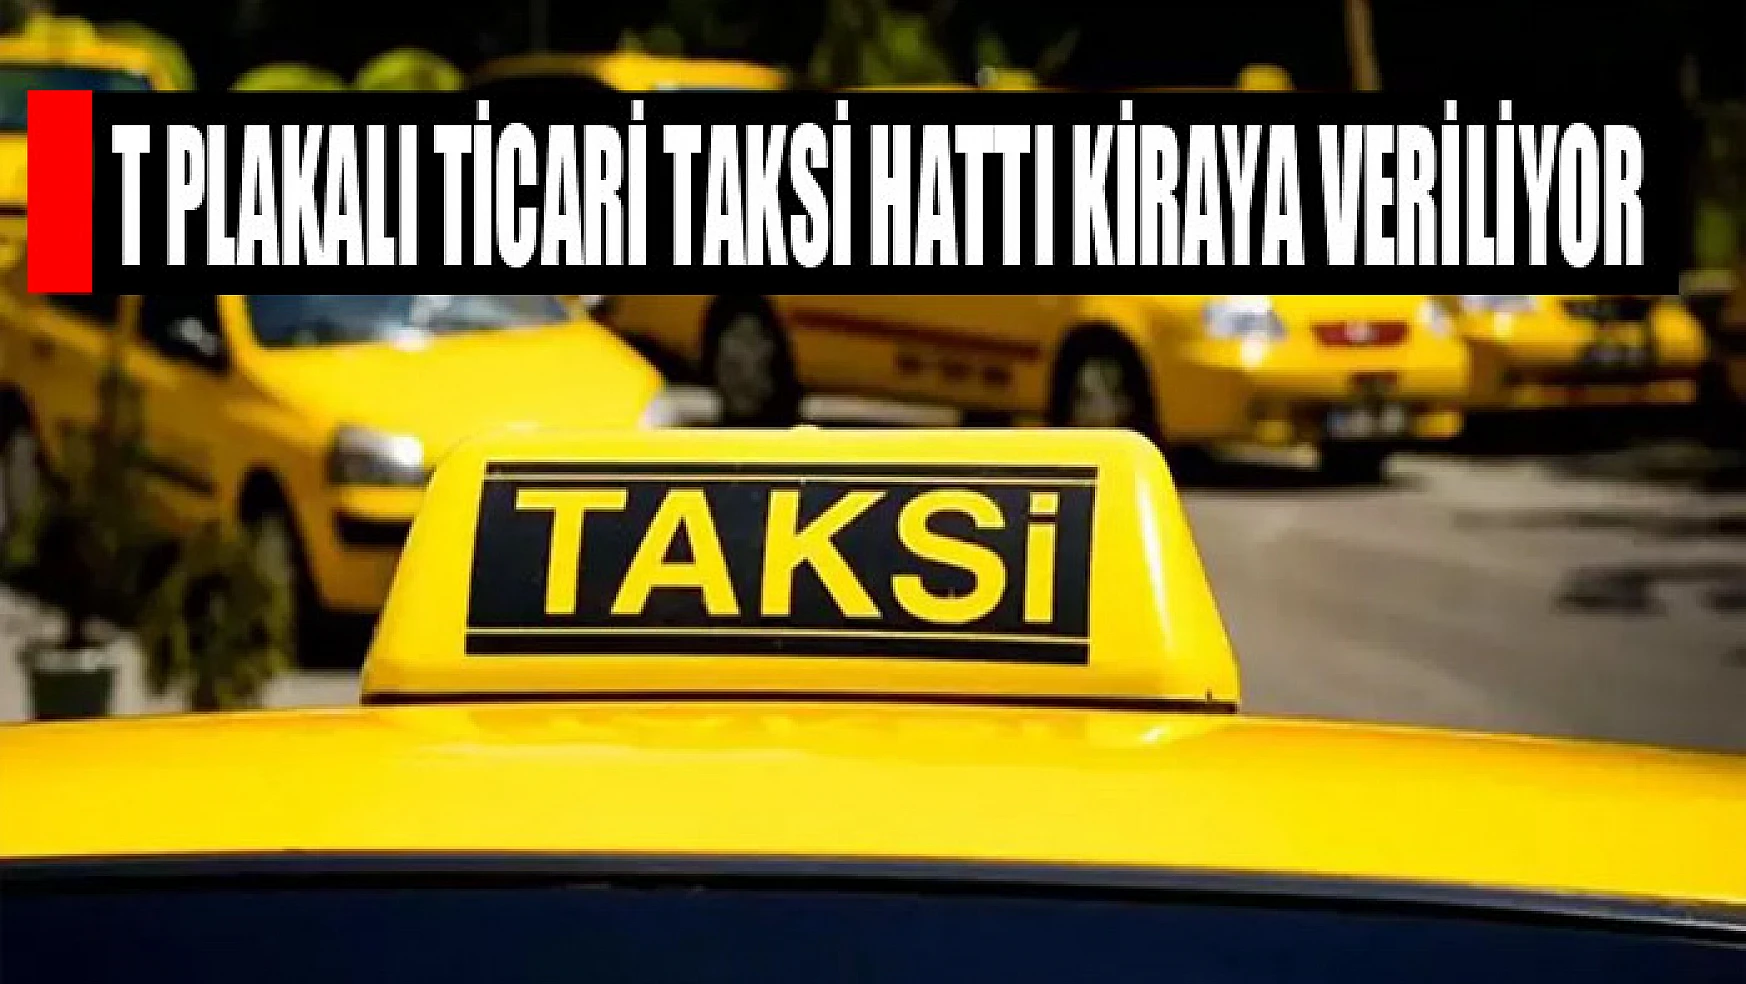 T plakalı ticari taksi hattı kiraya veriliyor